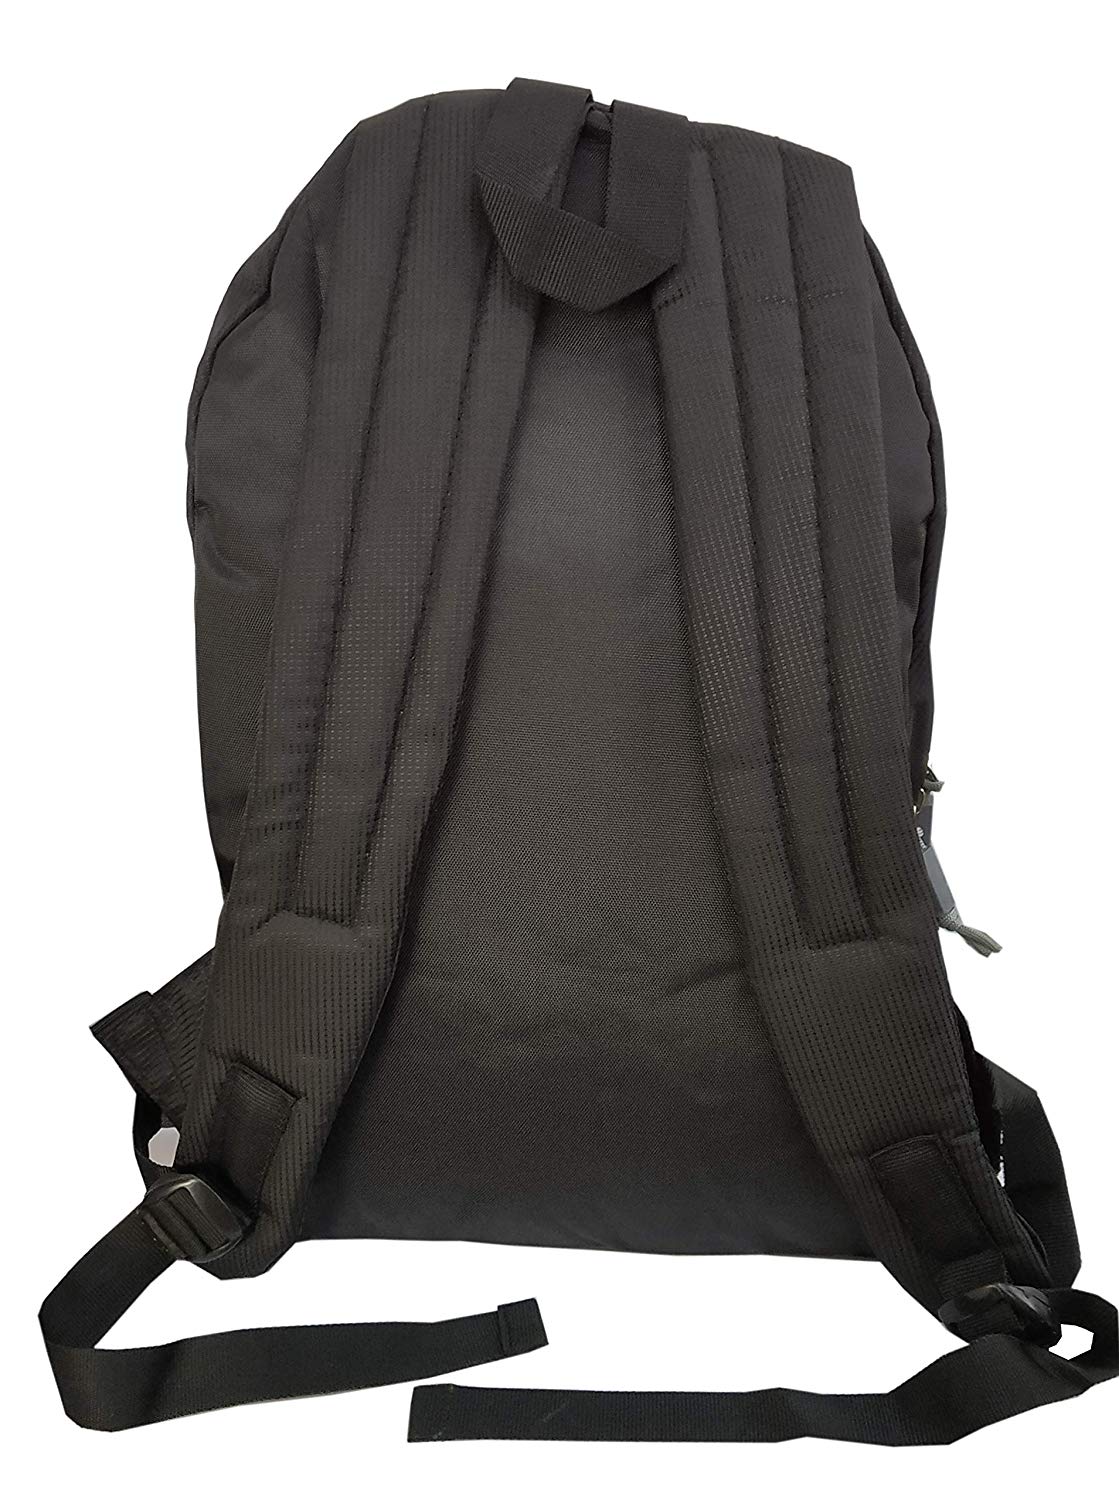 Vicky Backpack (Rubber Logo), Black/Grey - Best Price online Prokicksports.com